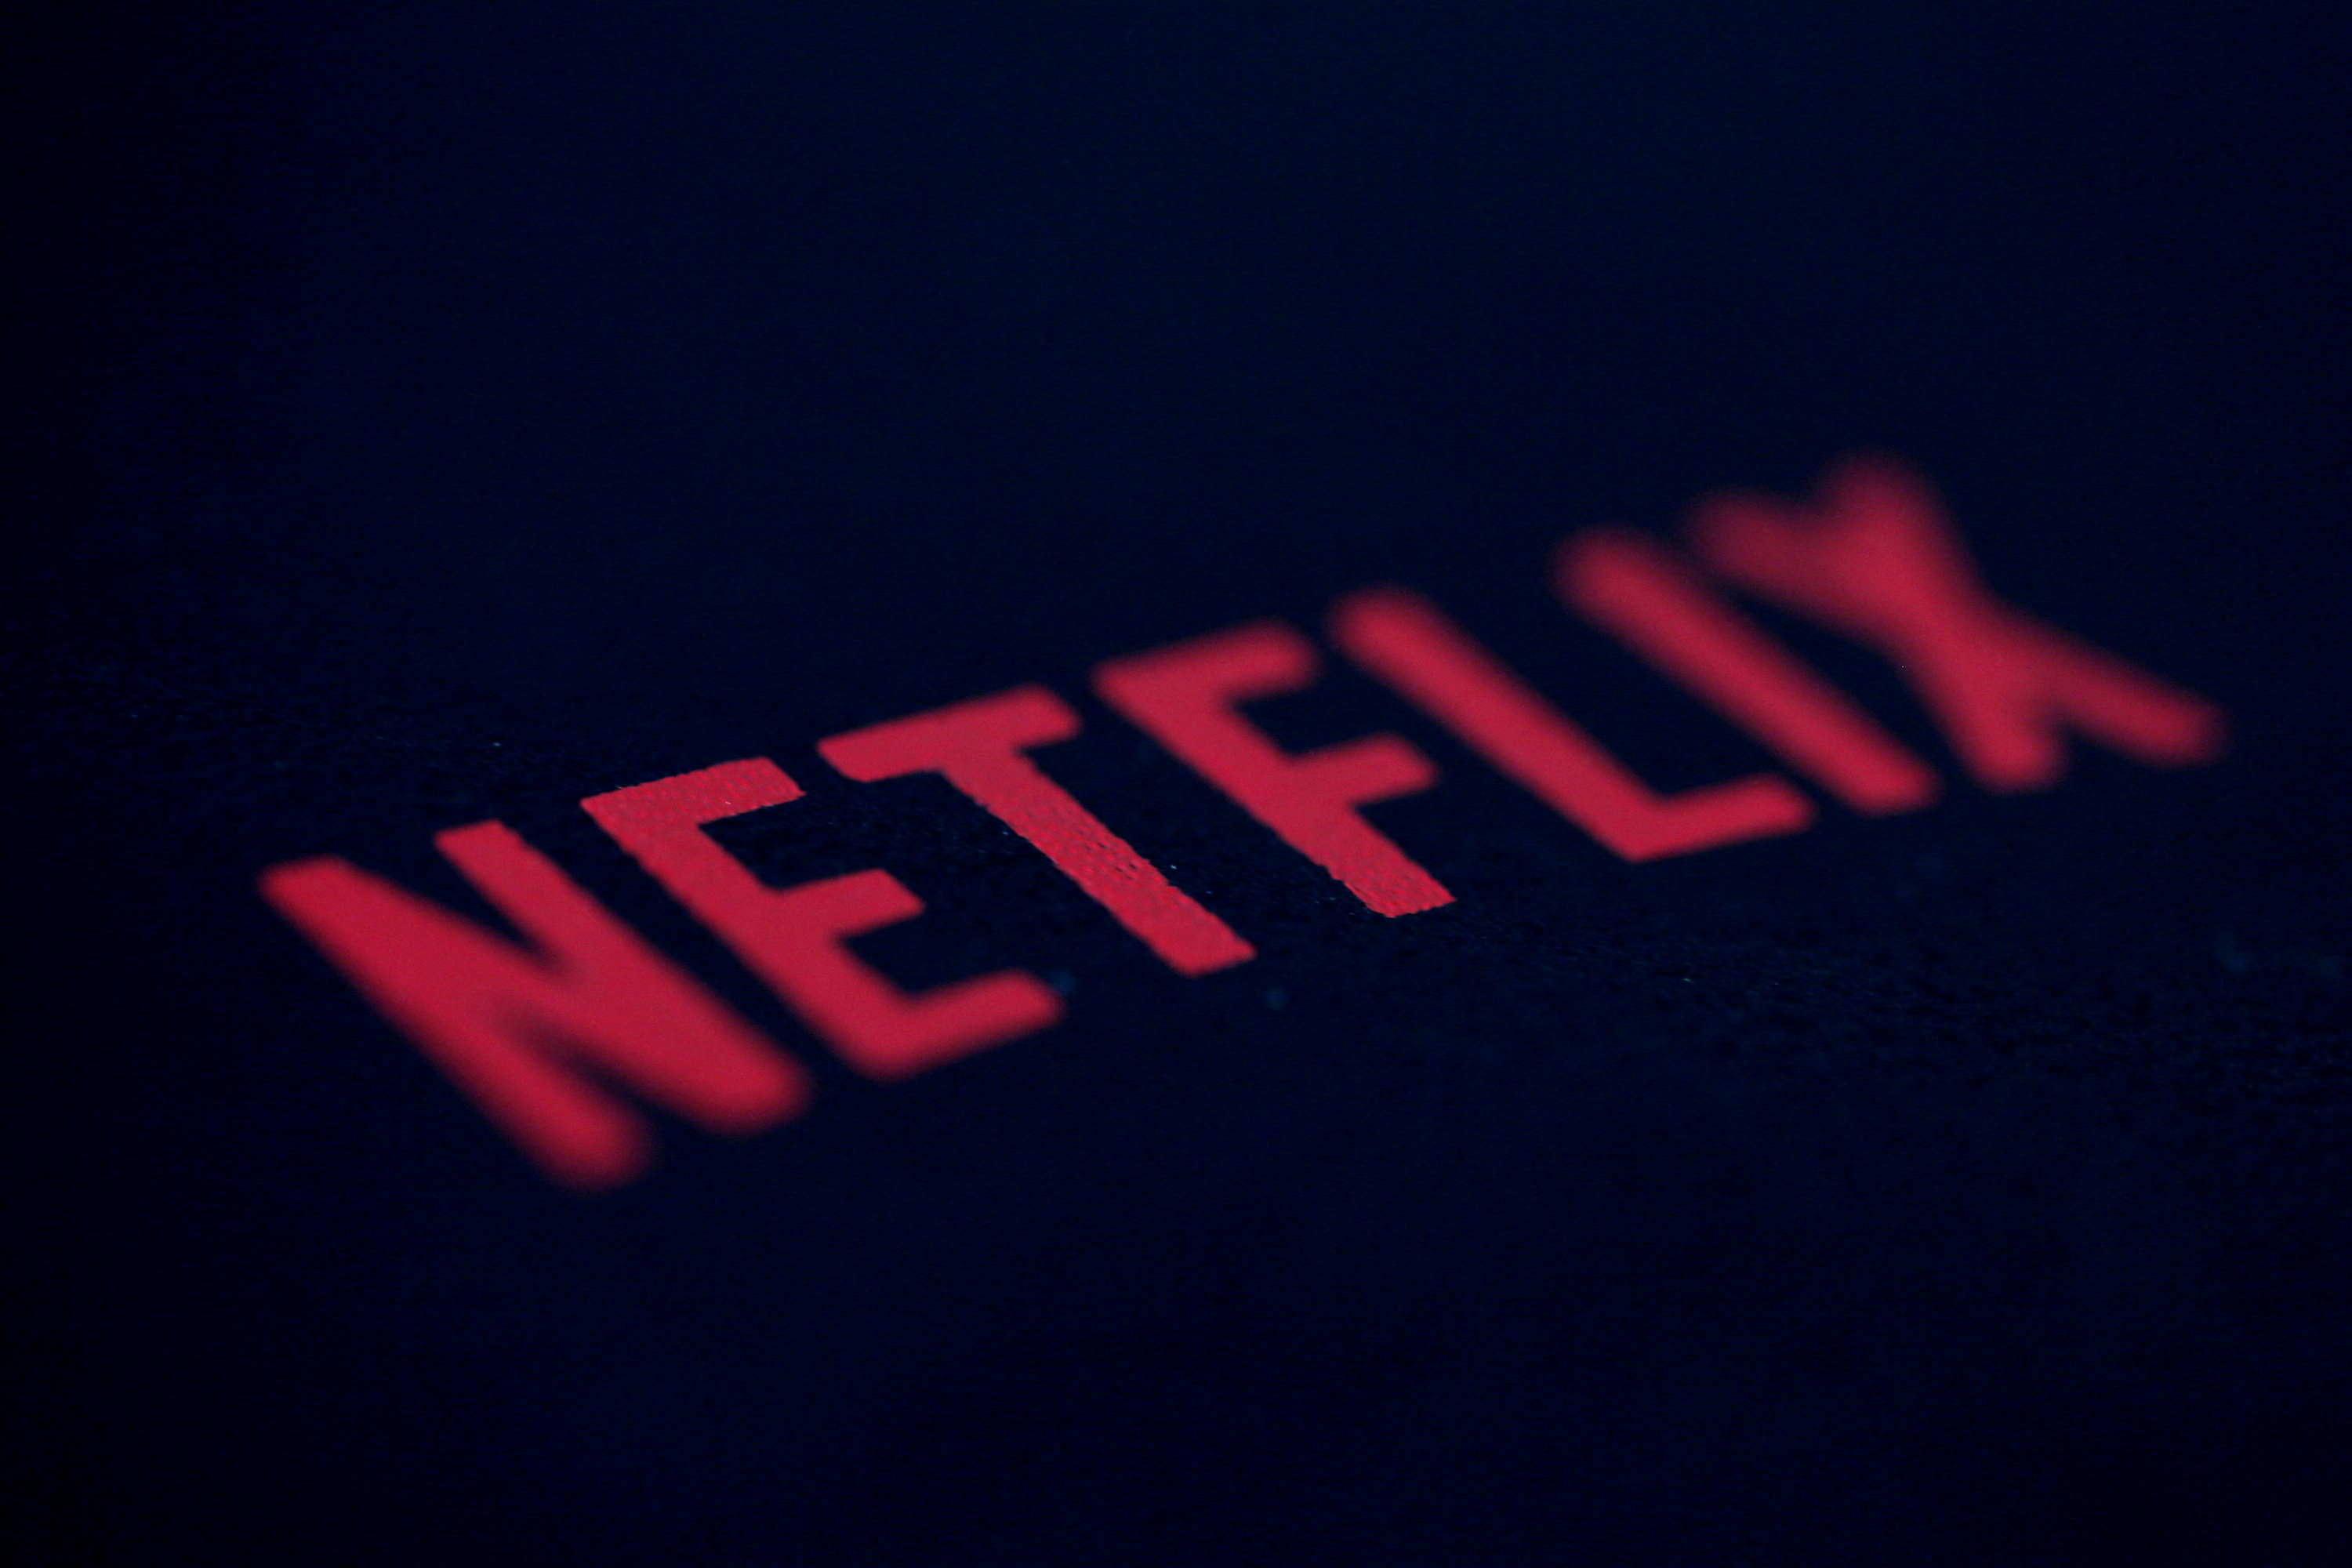 Por sus series y películas, Netflix se ha convertido en una de las plataformas más fuertes en la guerra del streaming. (Gonzalo Fuentes)